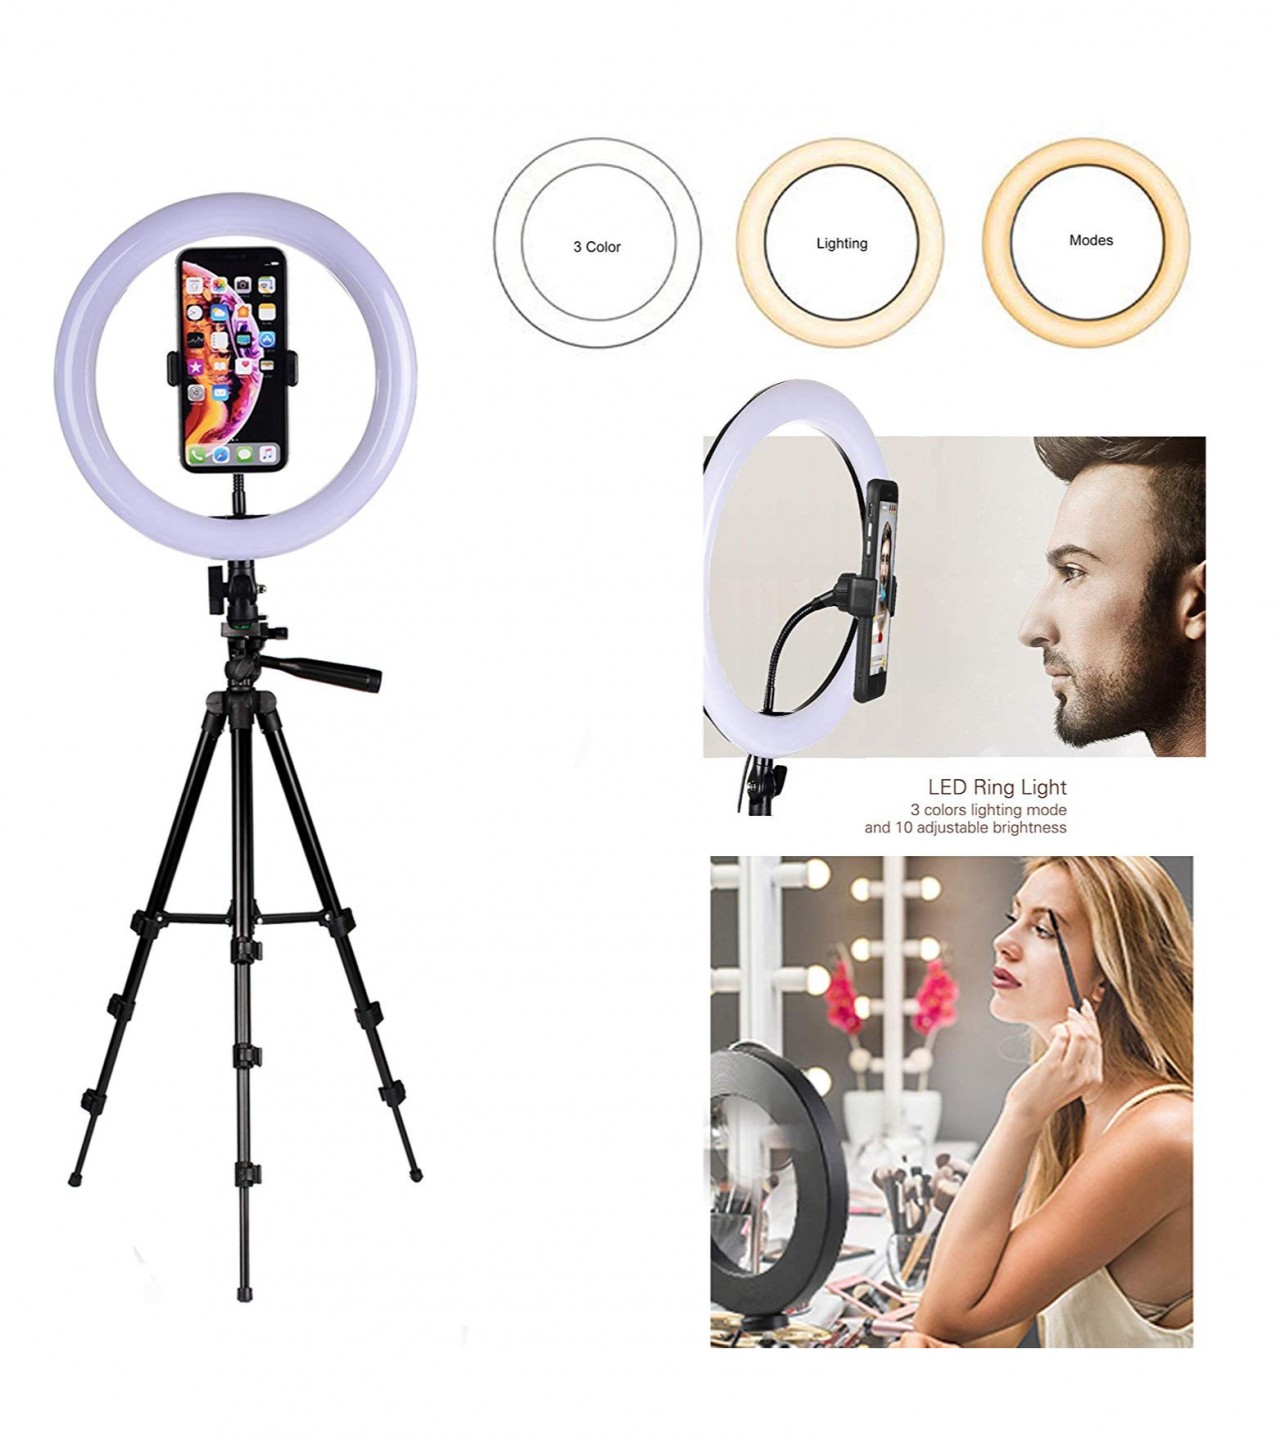 Selfie Ring Light, 26cm 360 degree rotation, 3 colors